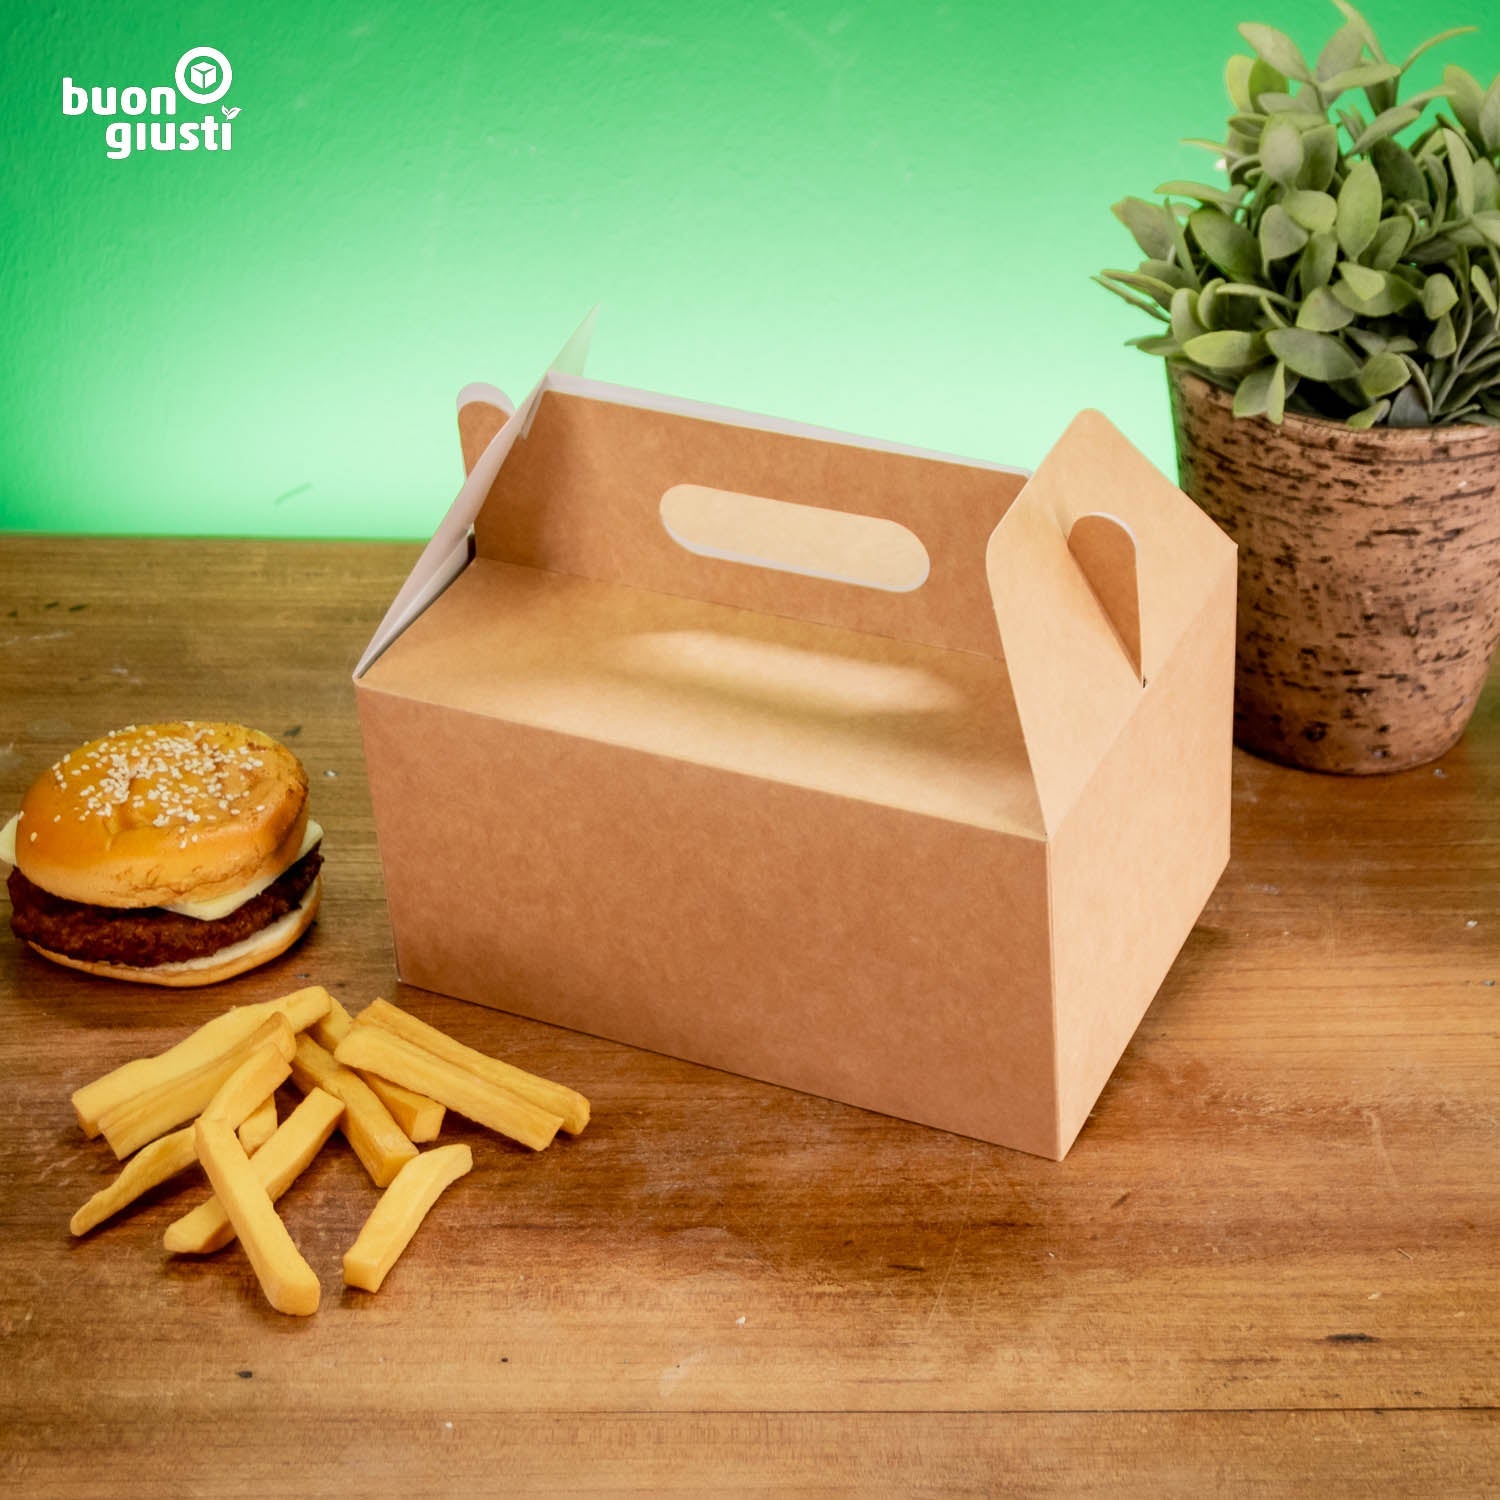 200x Lunchbox mit Griff 21x15x11 cm faltbar Food Box Kraftkarton braun - Burger - buongiusti AG - personalisiert ab 100 Stück